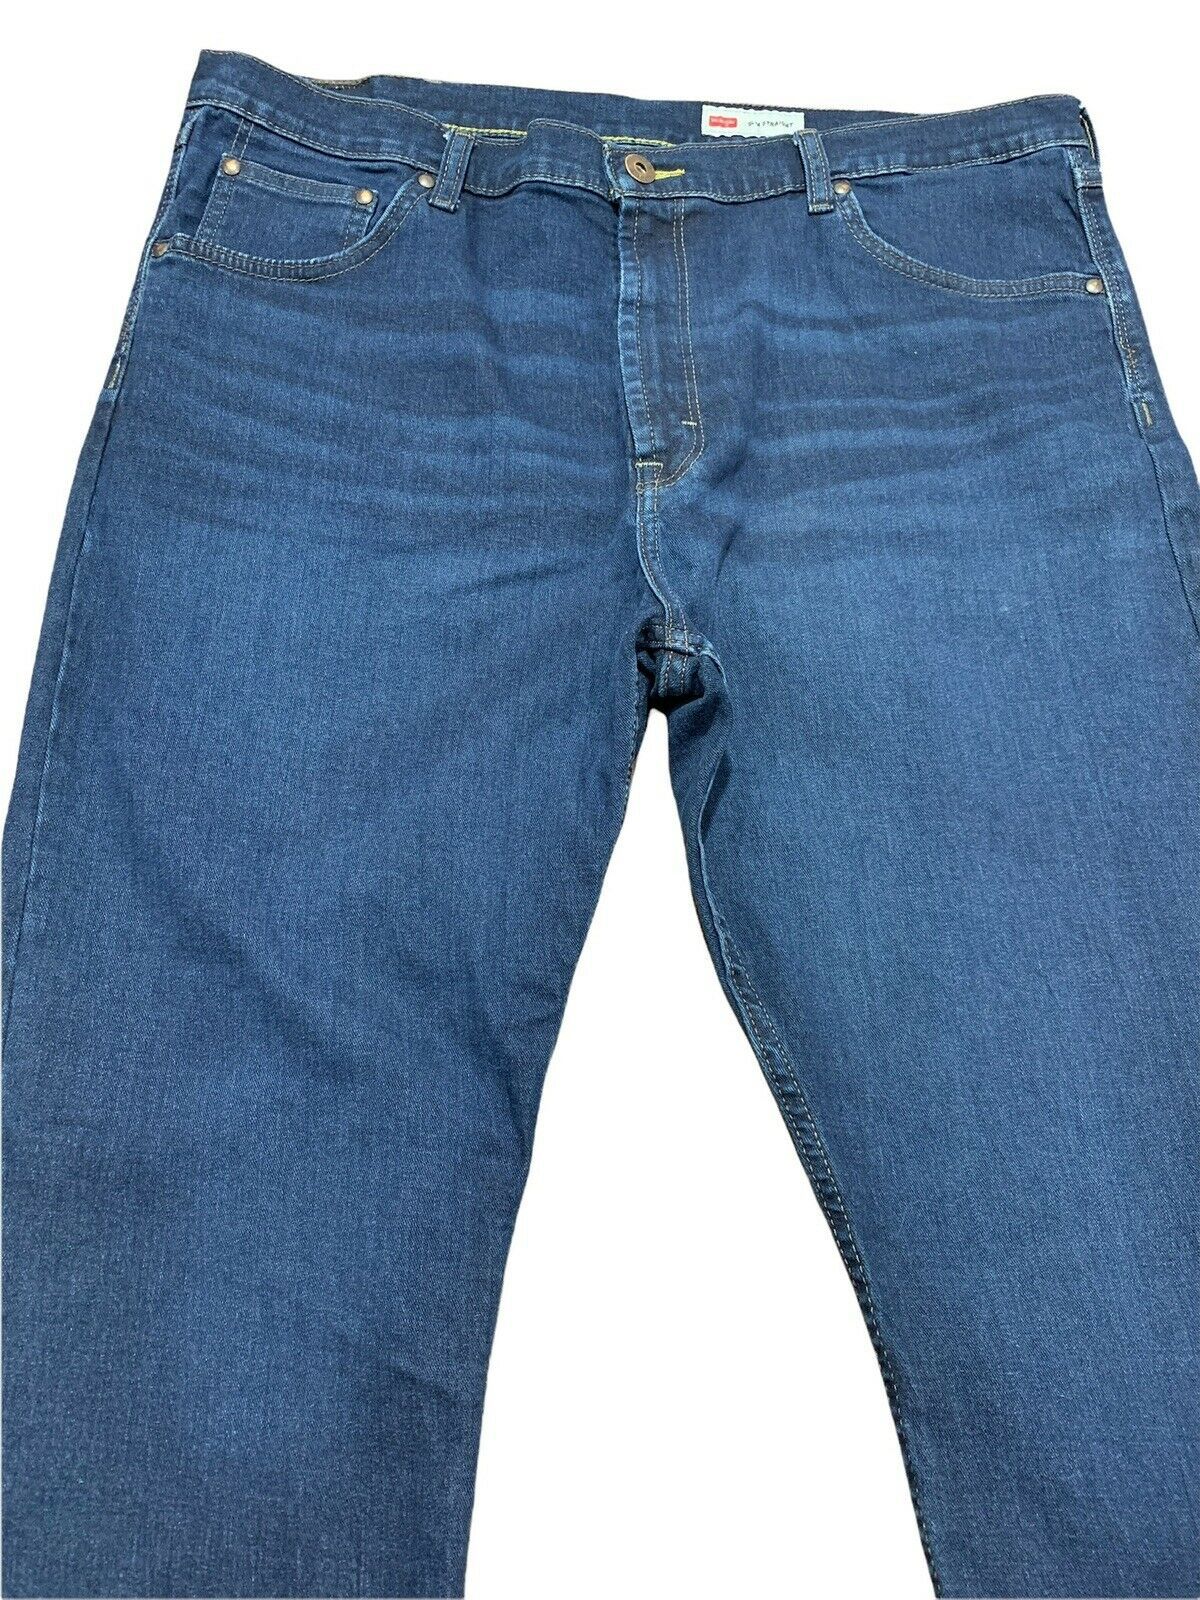 Wrangler Slim Straight Men's Jeans Size 40 X 30 Dark Bue Denim Premium ...